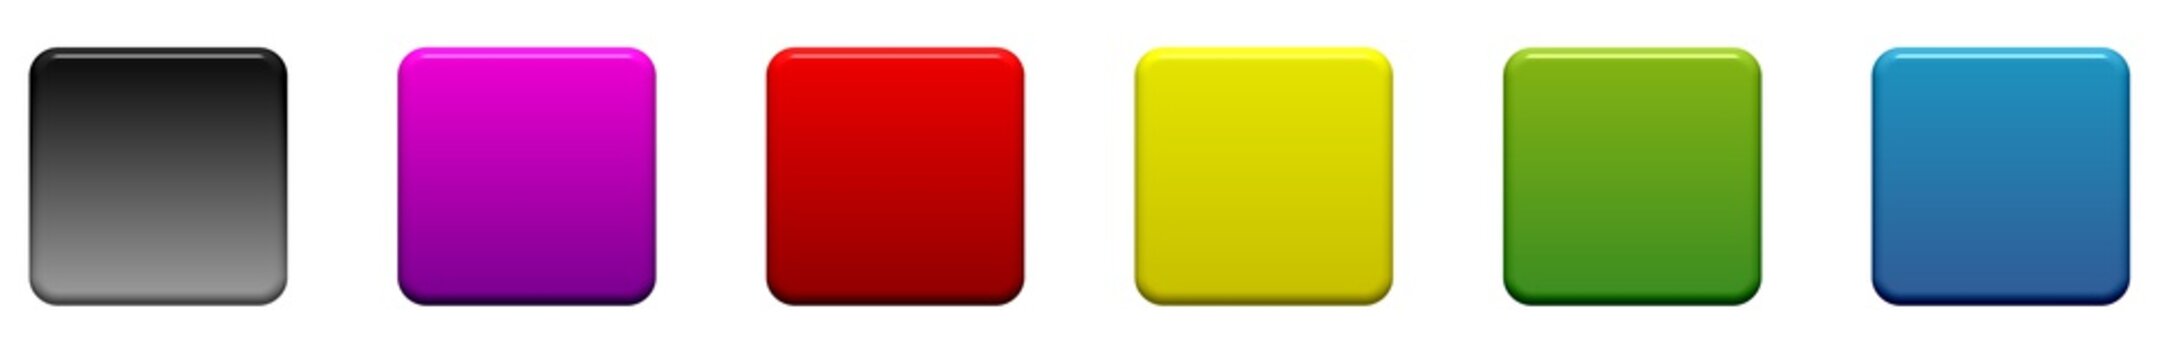 6 farbige Buttons mit Textfreiraum